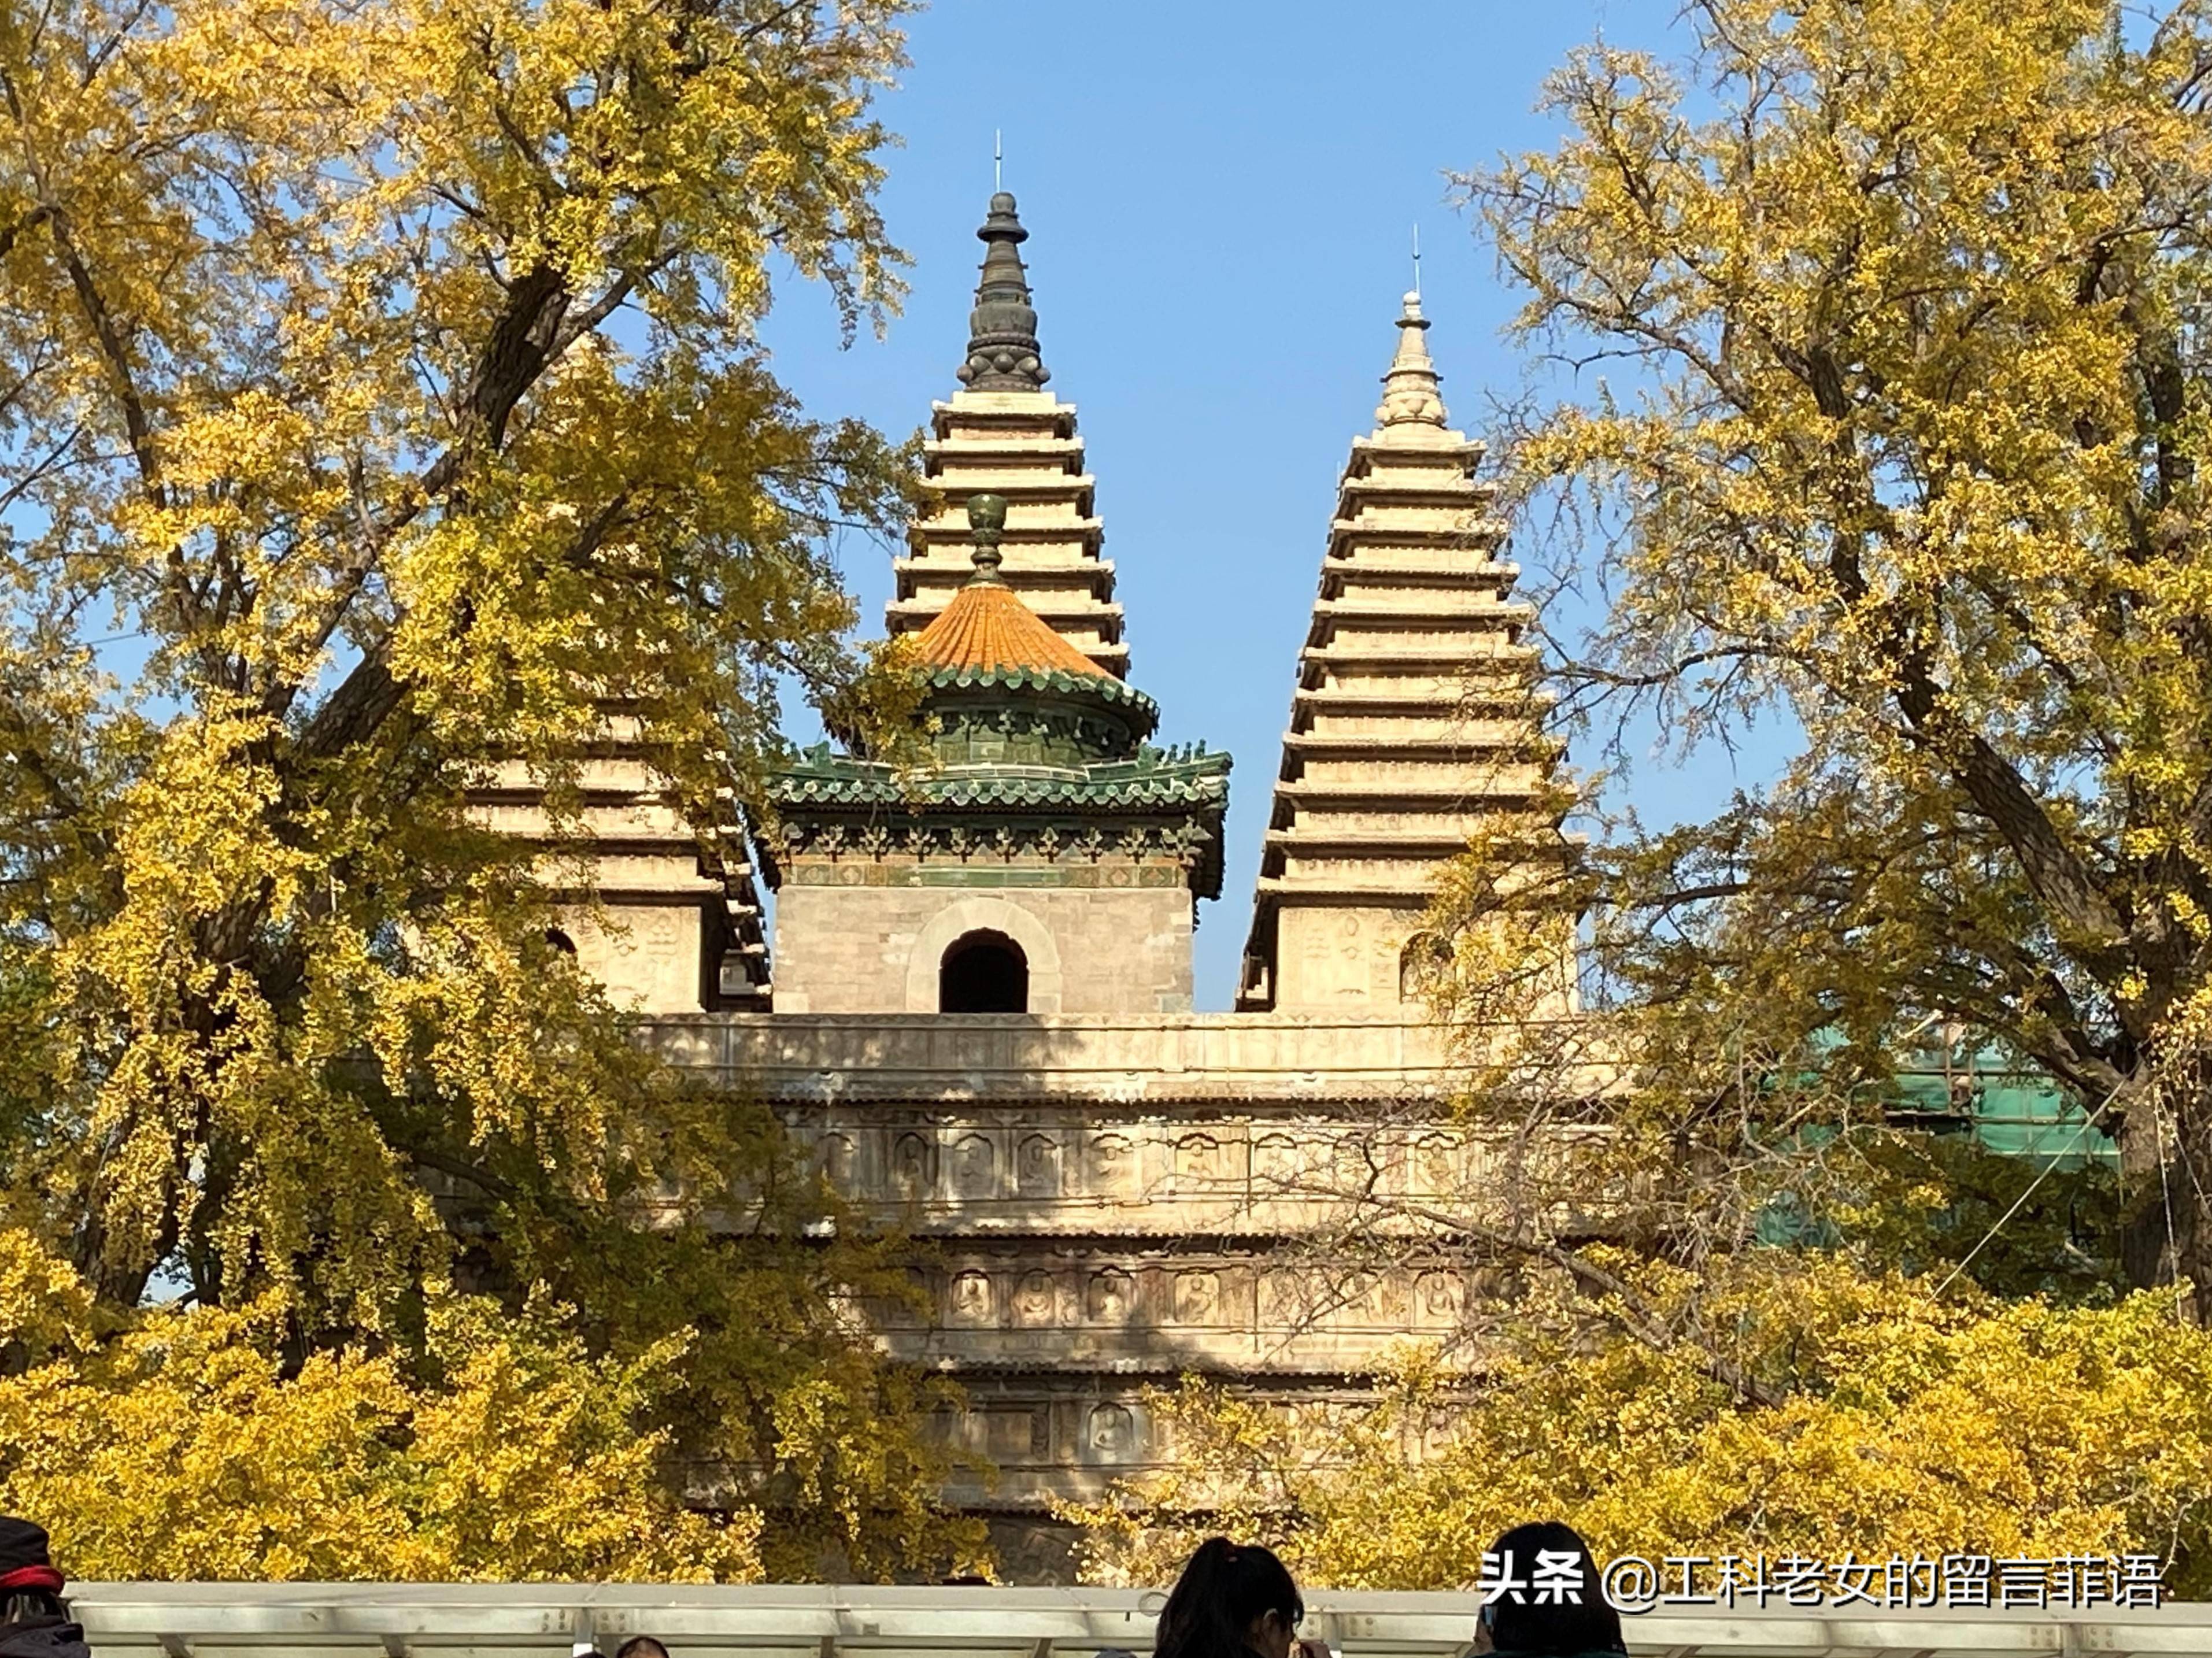 这里是北京之秋美翻了五塔寺